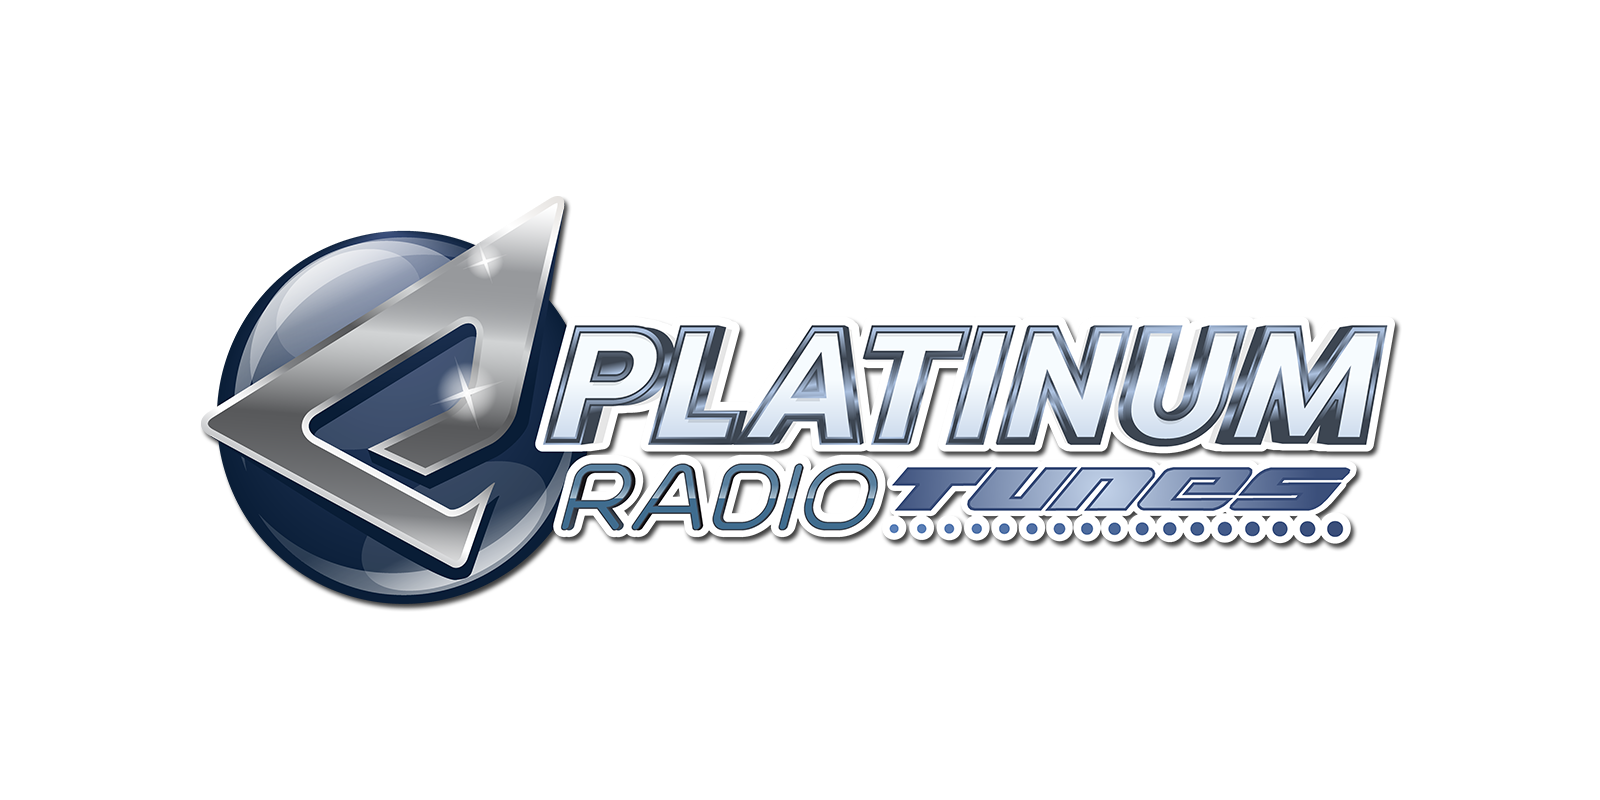 PLATINUM radiotunes logo 1 transparent